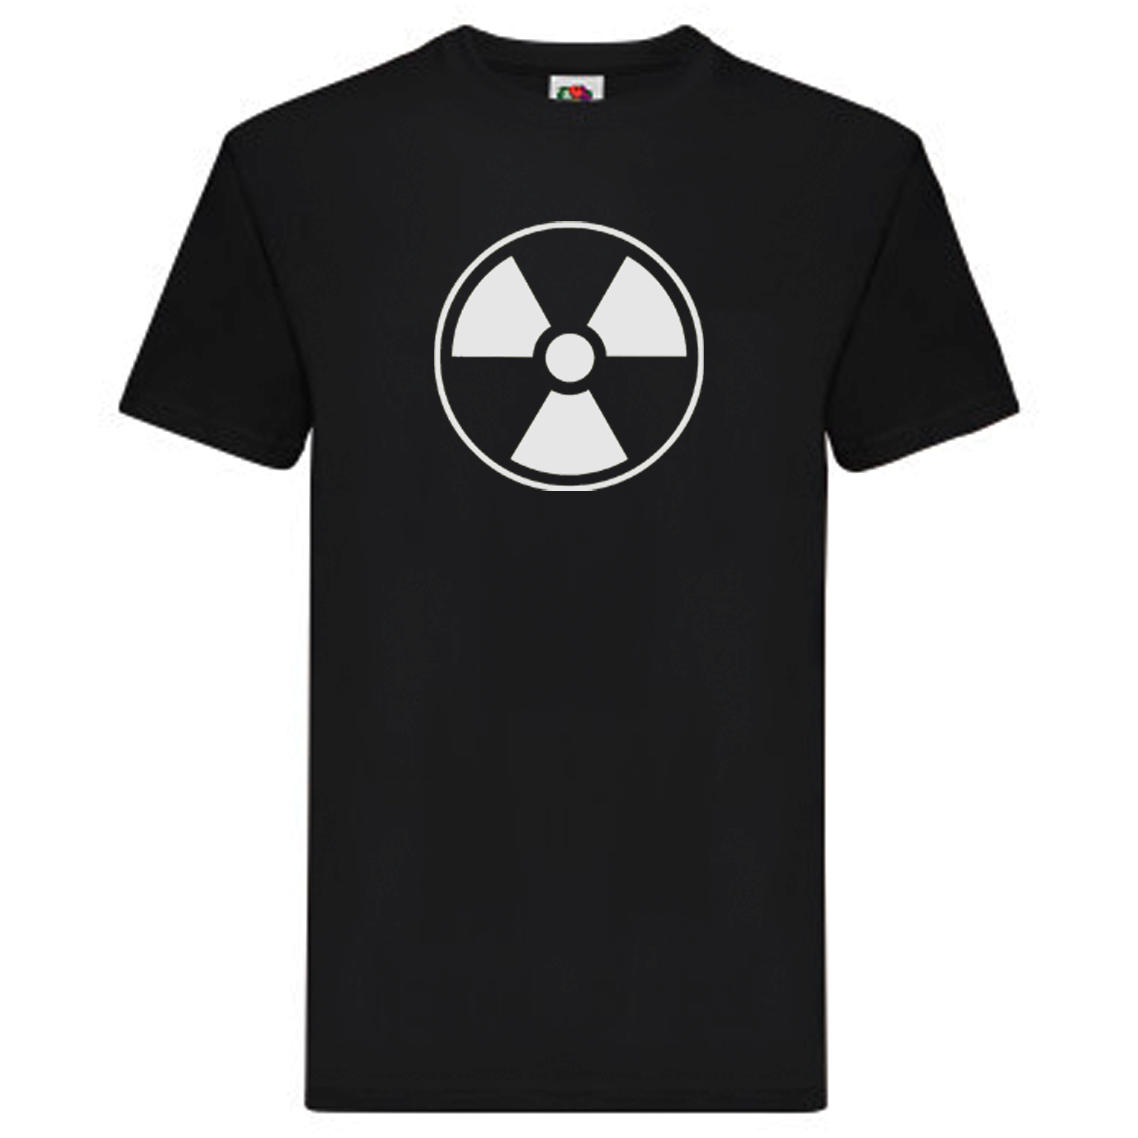 T-Shirt - Nuclear Power logo!